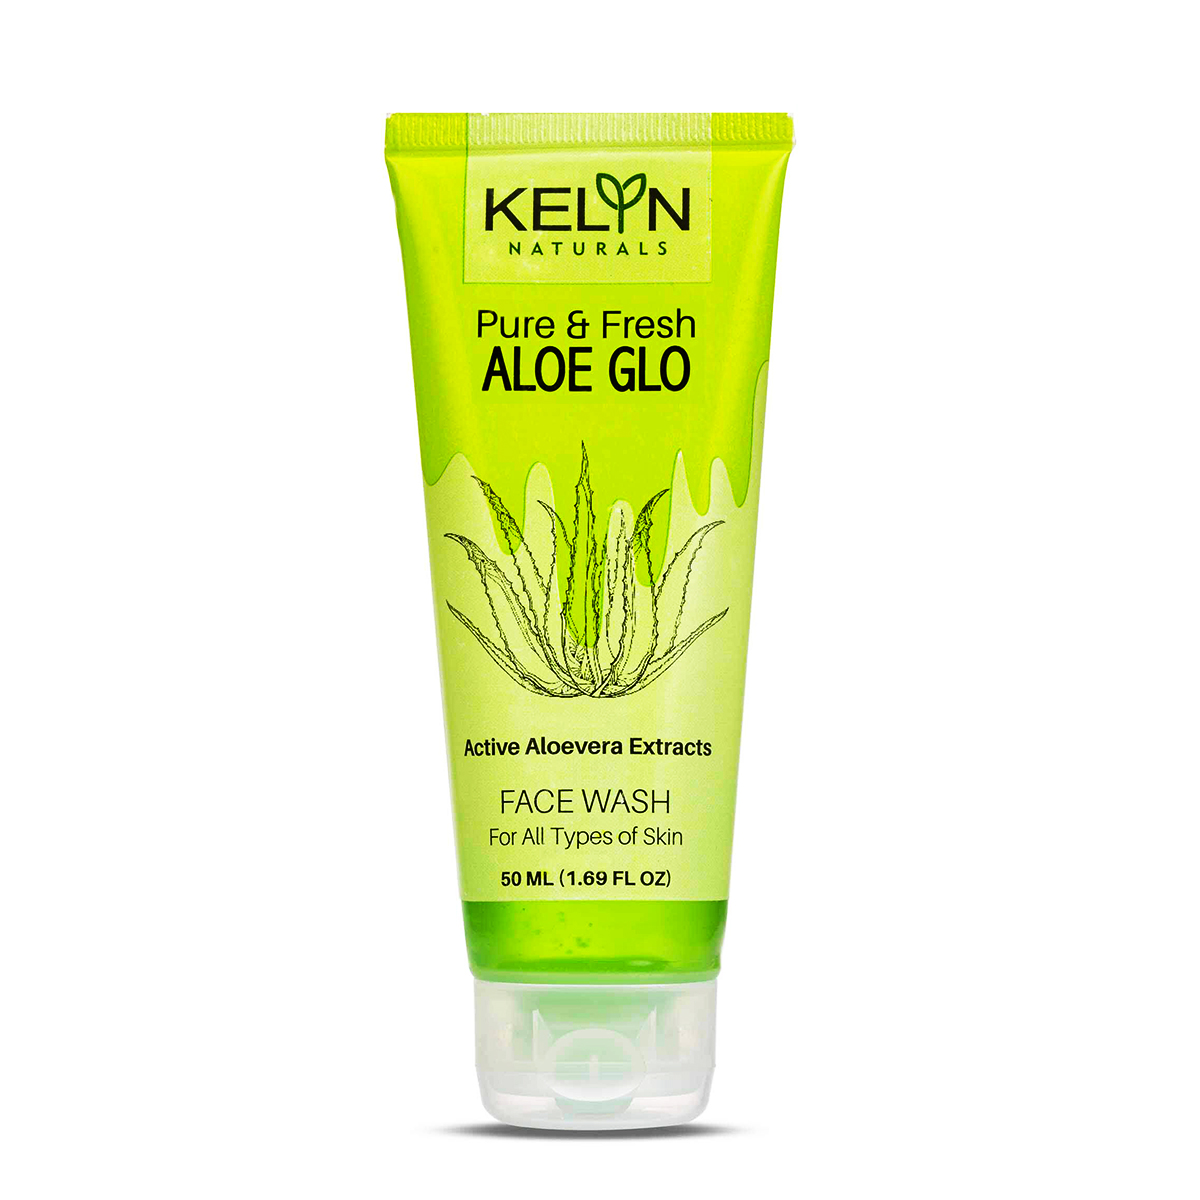 Kelyn Pure & Fresh Aloe Glo Facewash